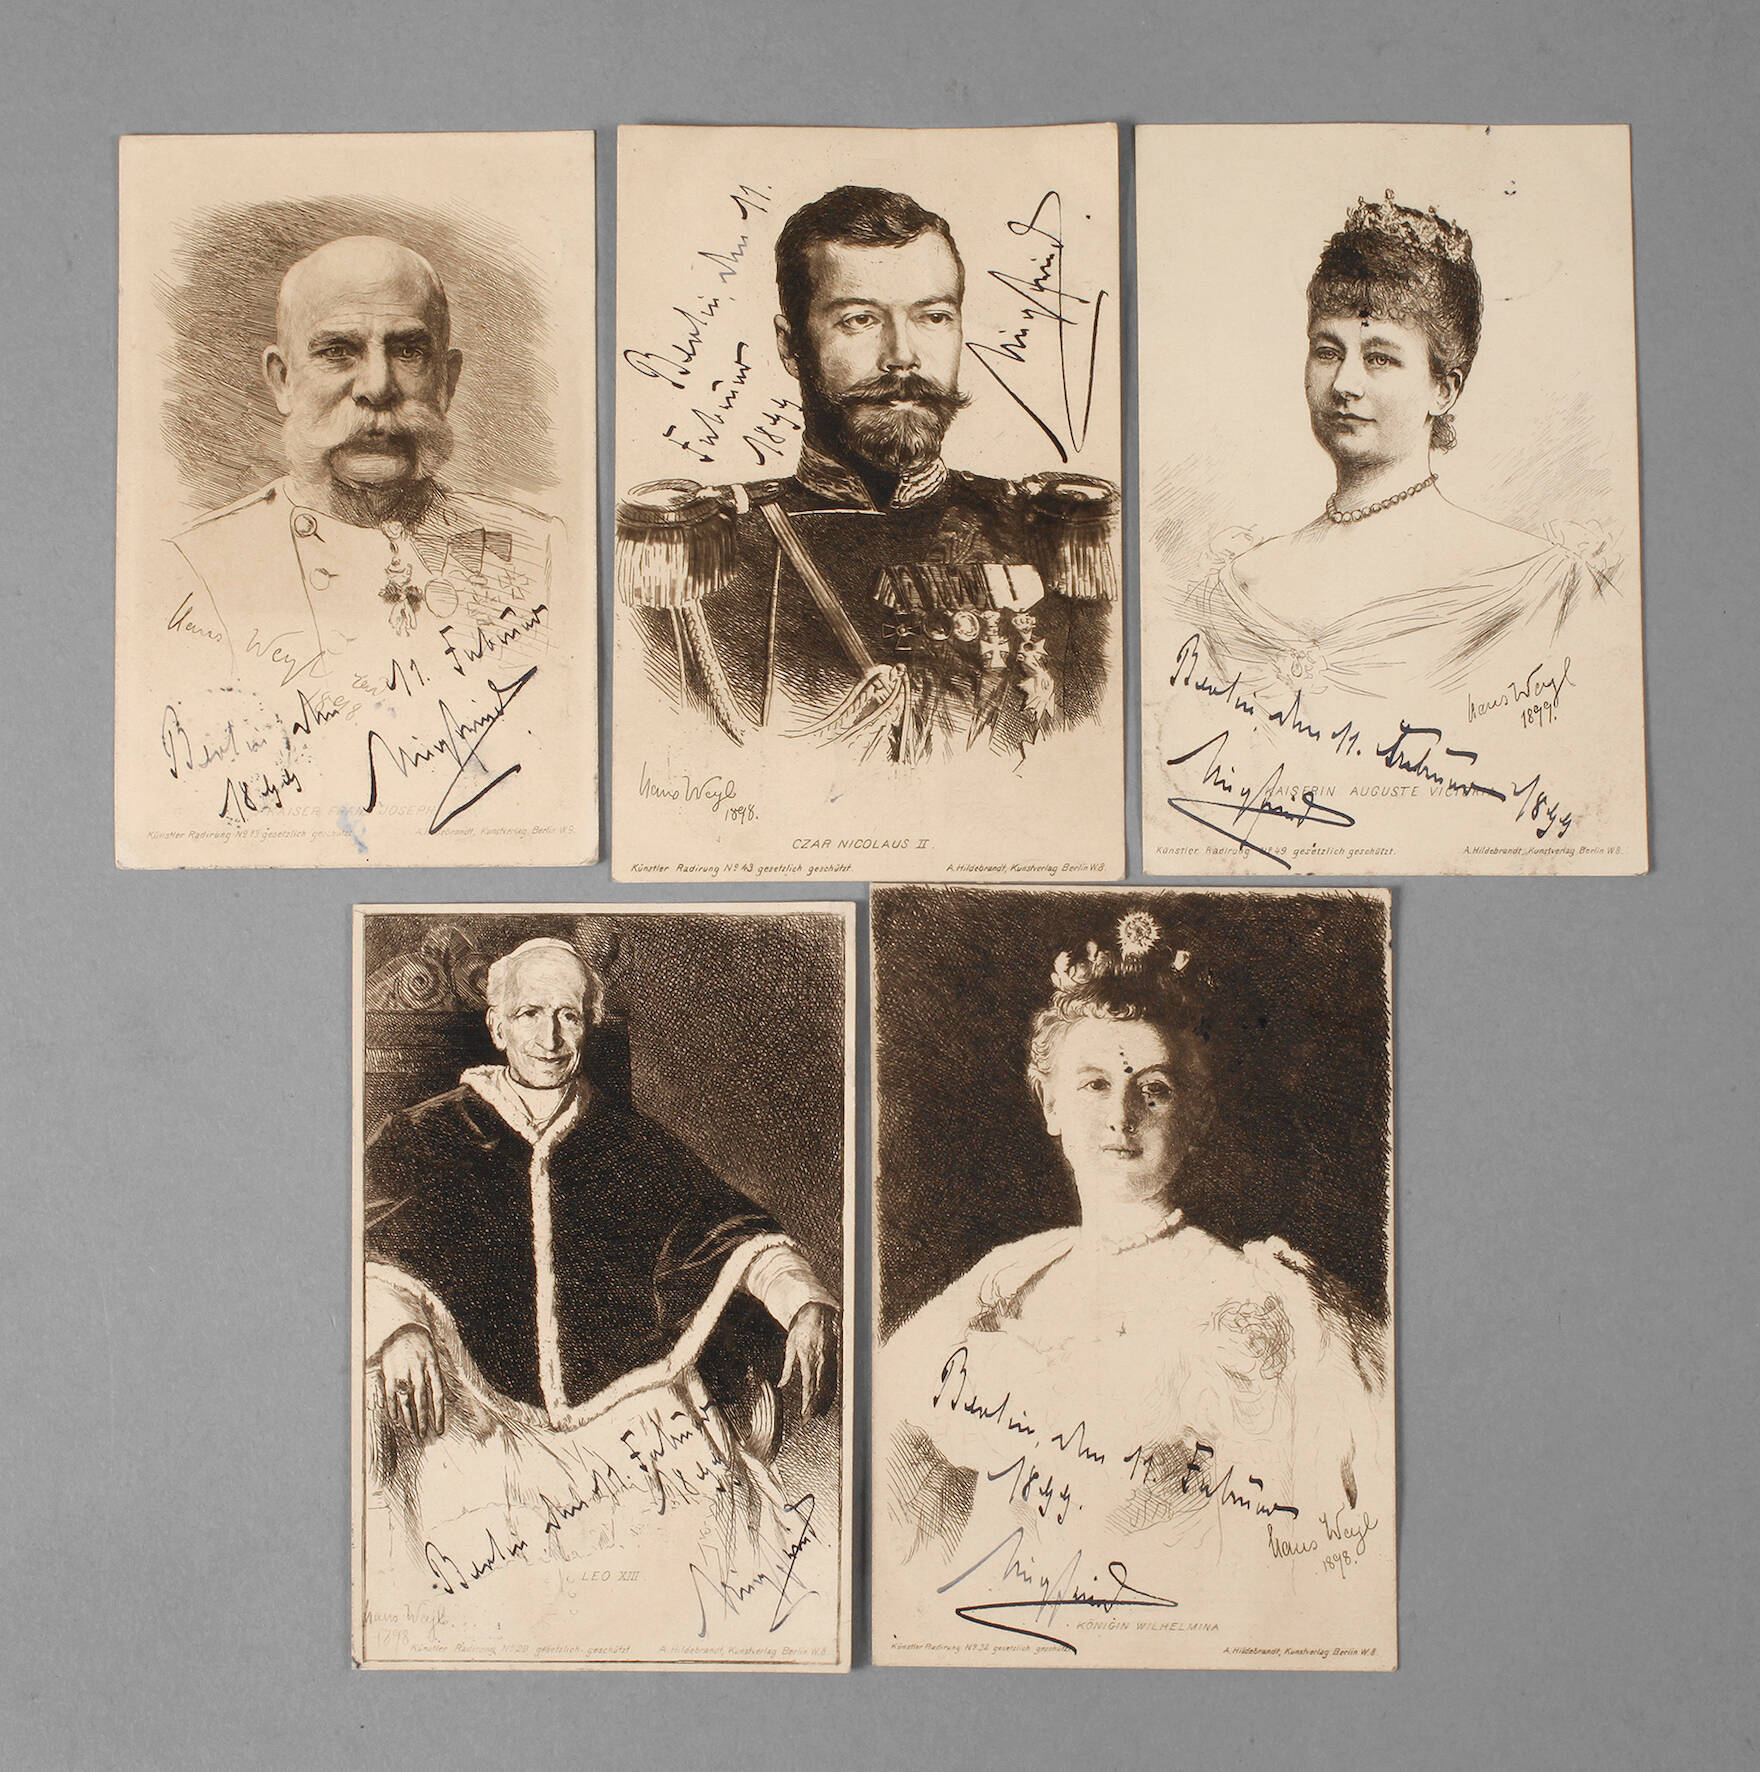 Postkarten adressiert an Gräfin Luitgard zu Castell-Rüdenhausen